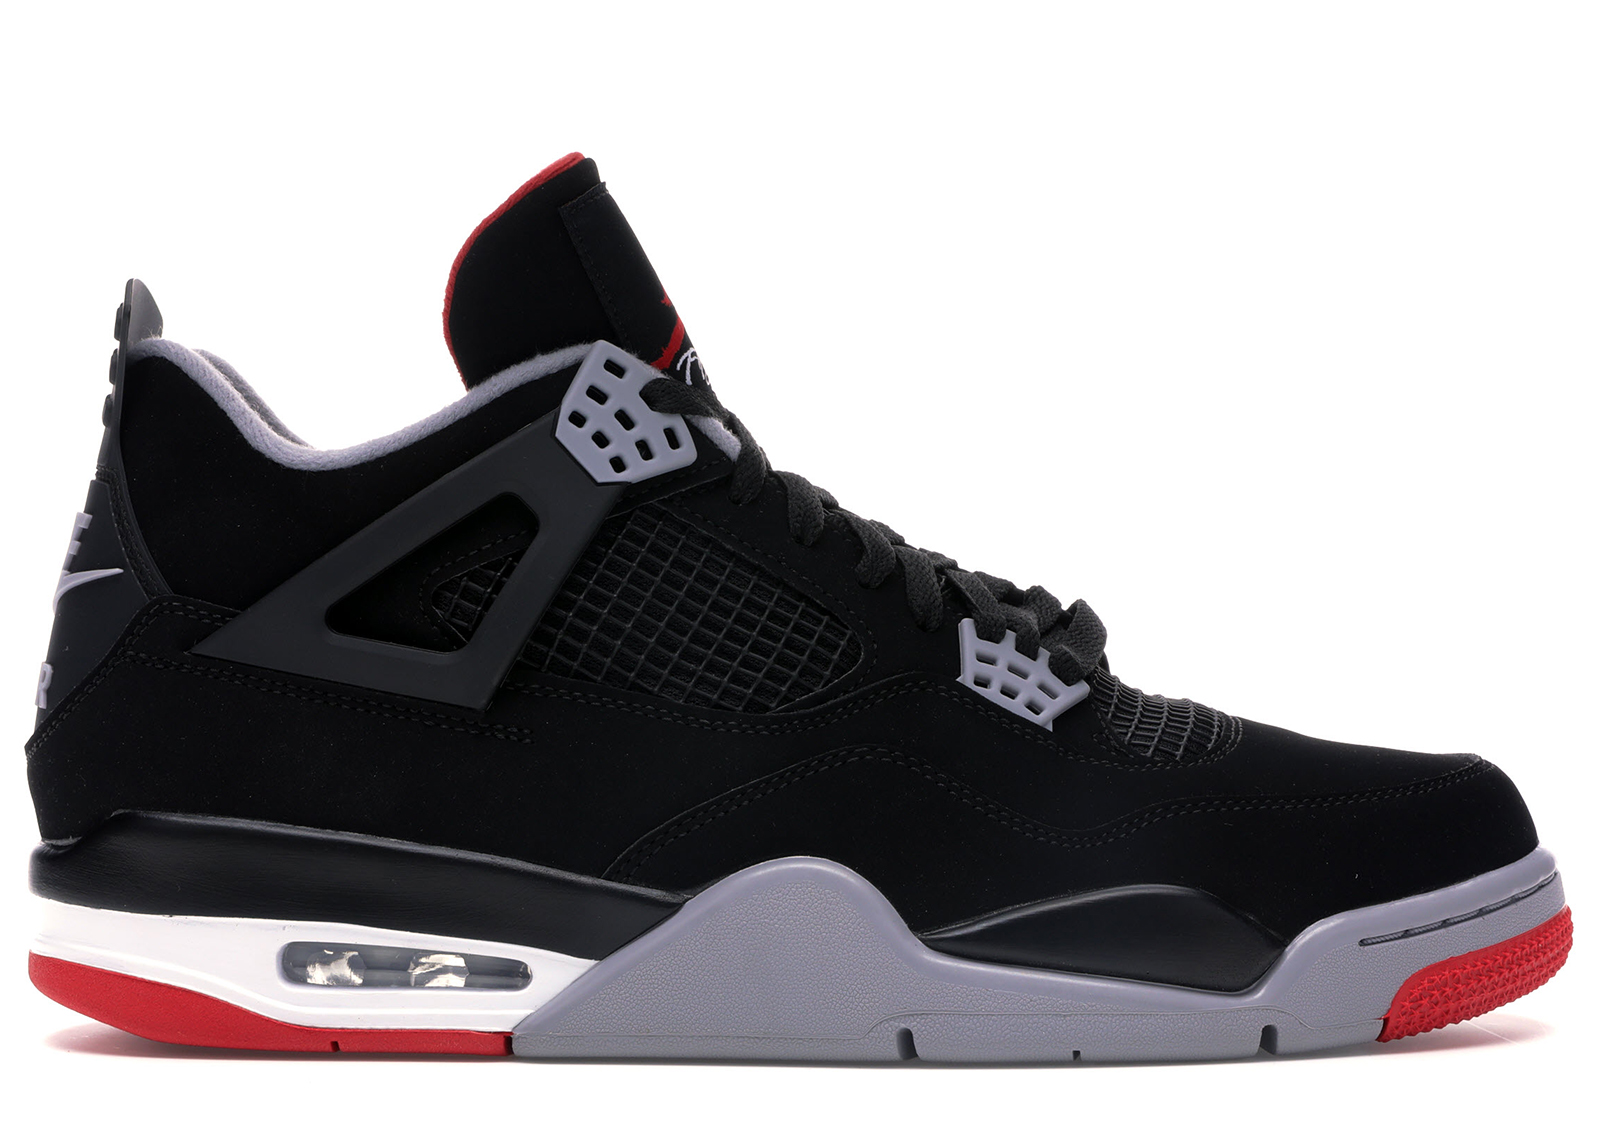 Buy Air Jordan 4 Shoes & New Sneakers - StockX